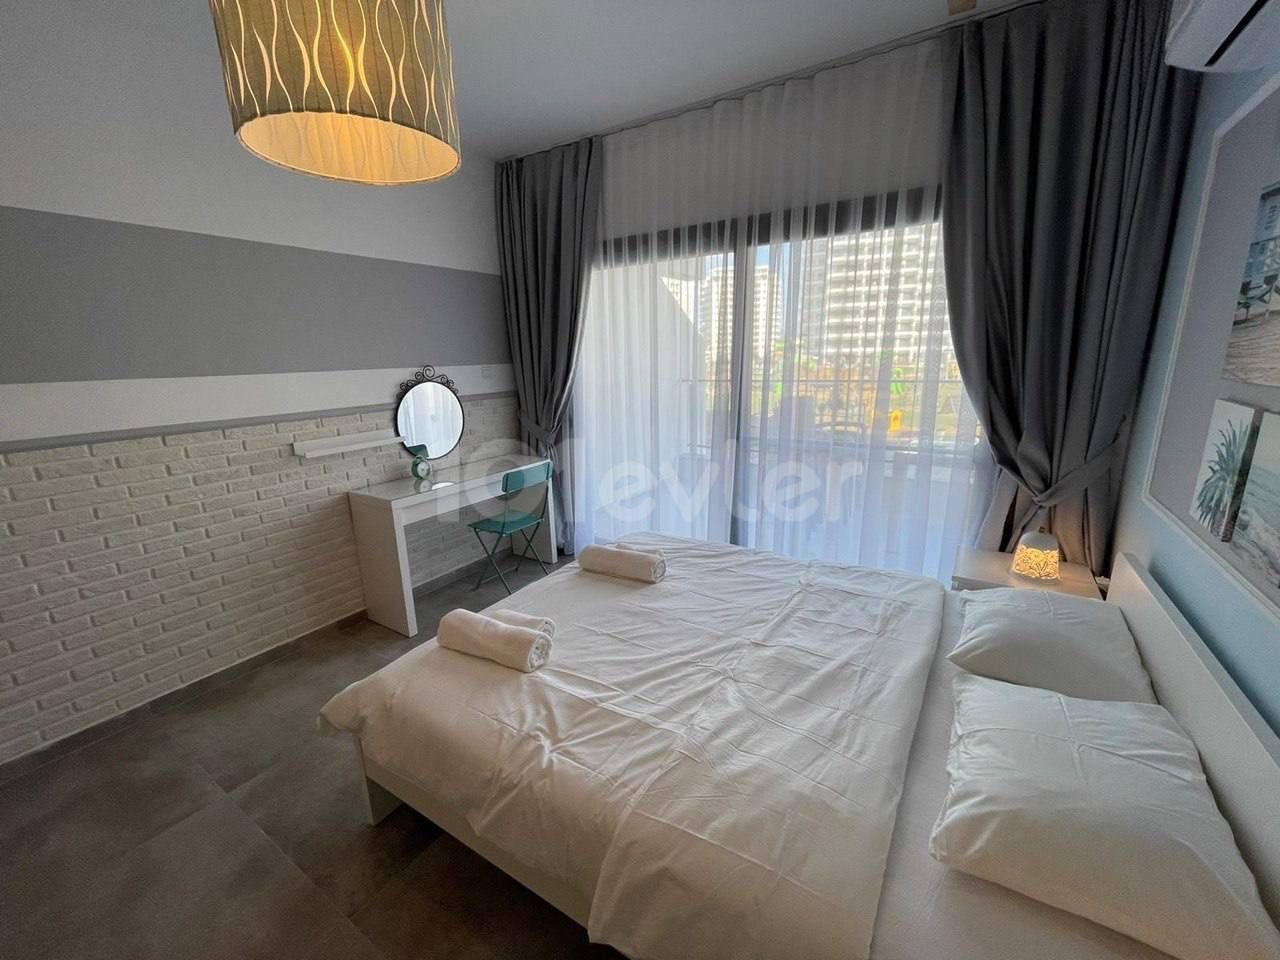 Инвестиционный купон на квартиру в курорте Искеле Сезар с концепцией отеля AirBnb и средней дневной доходностью 30 евро за бронирование.